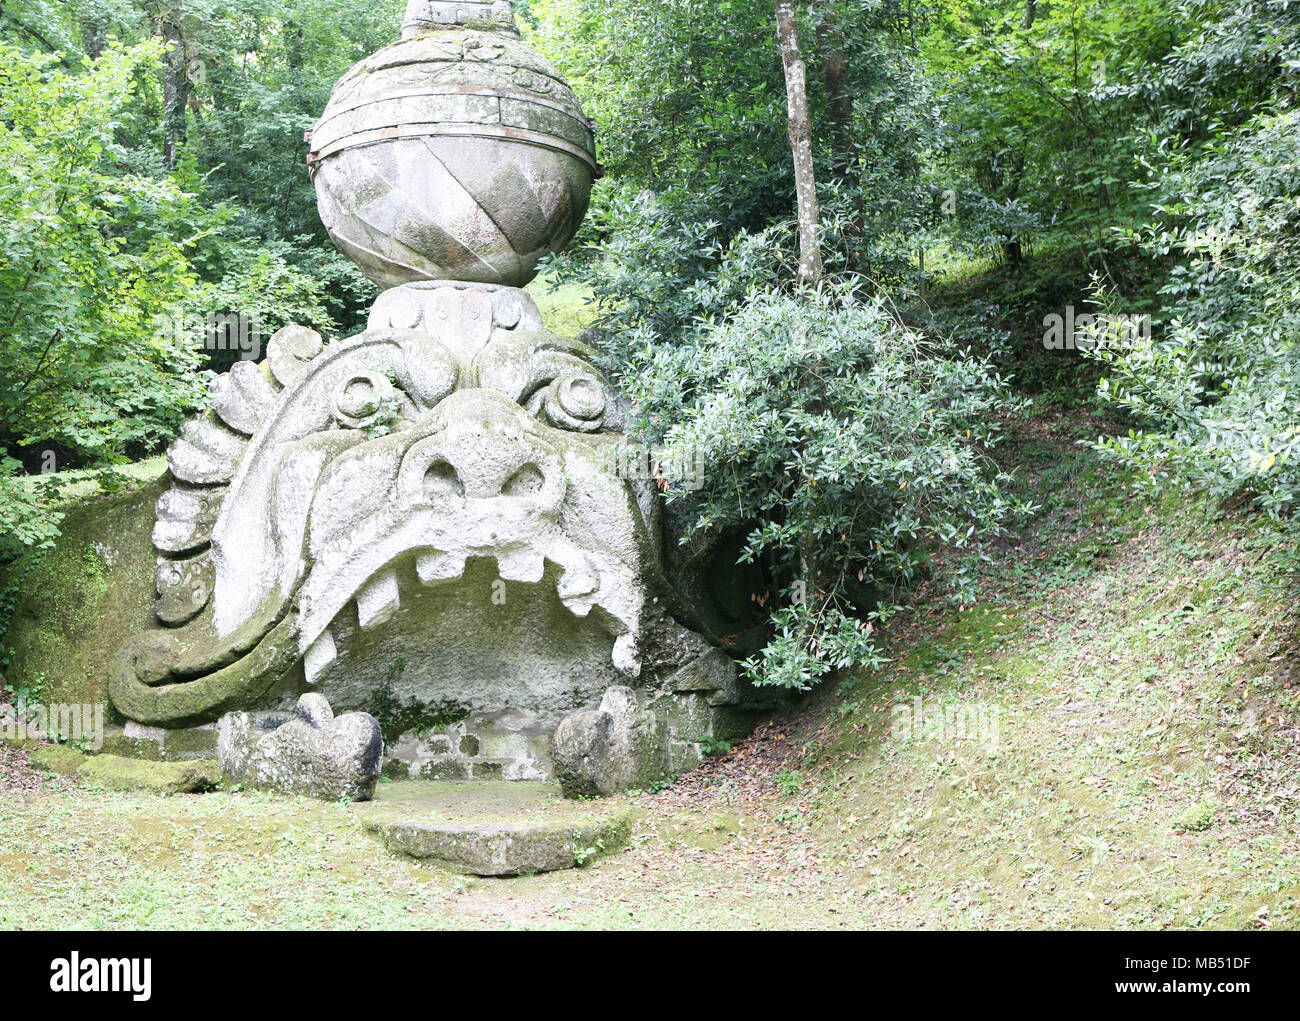 Testa gigantesca statua di Monster Park, Bomarzo, Italia Foto Stock